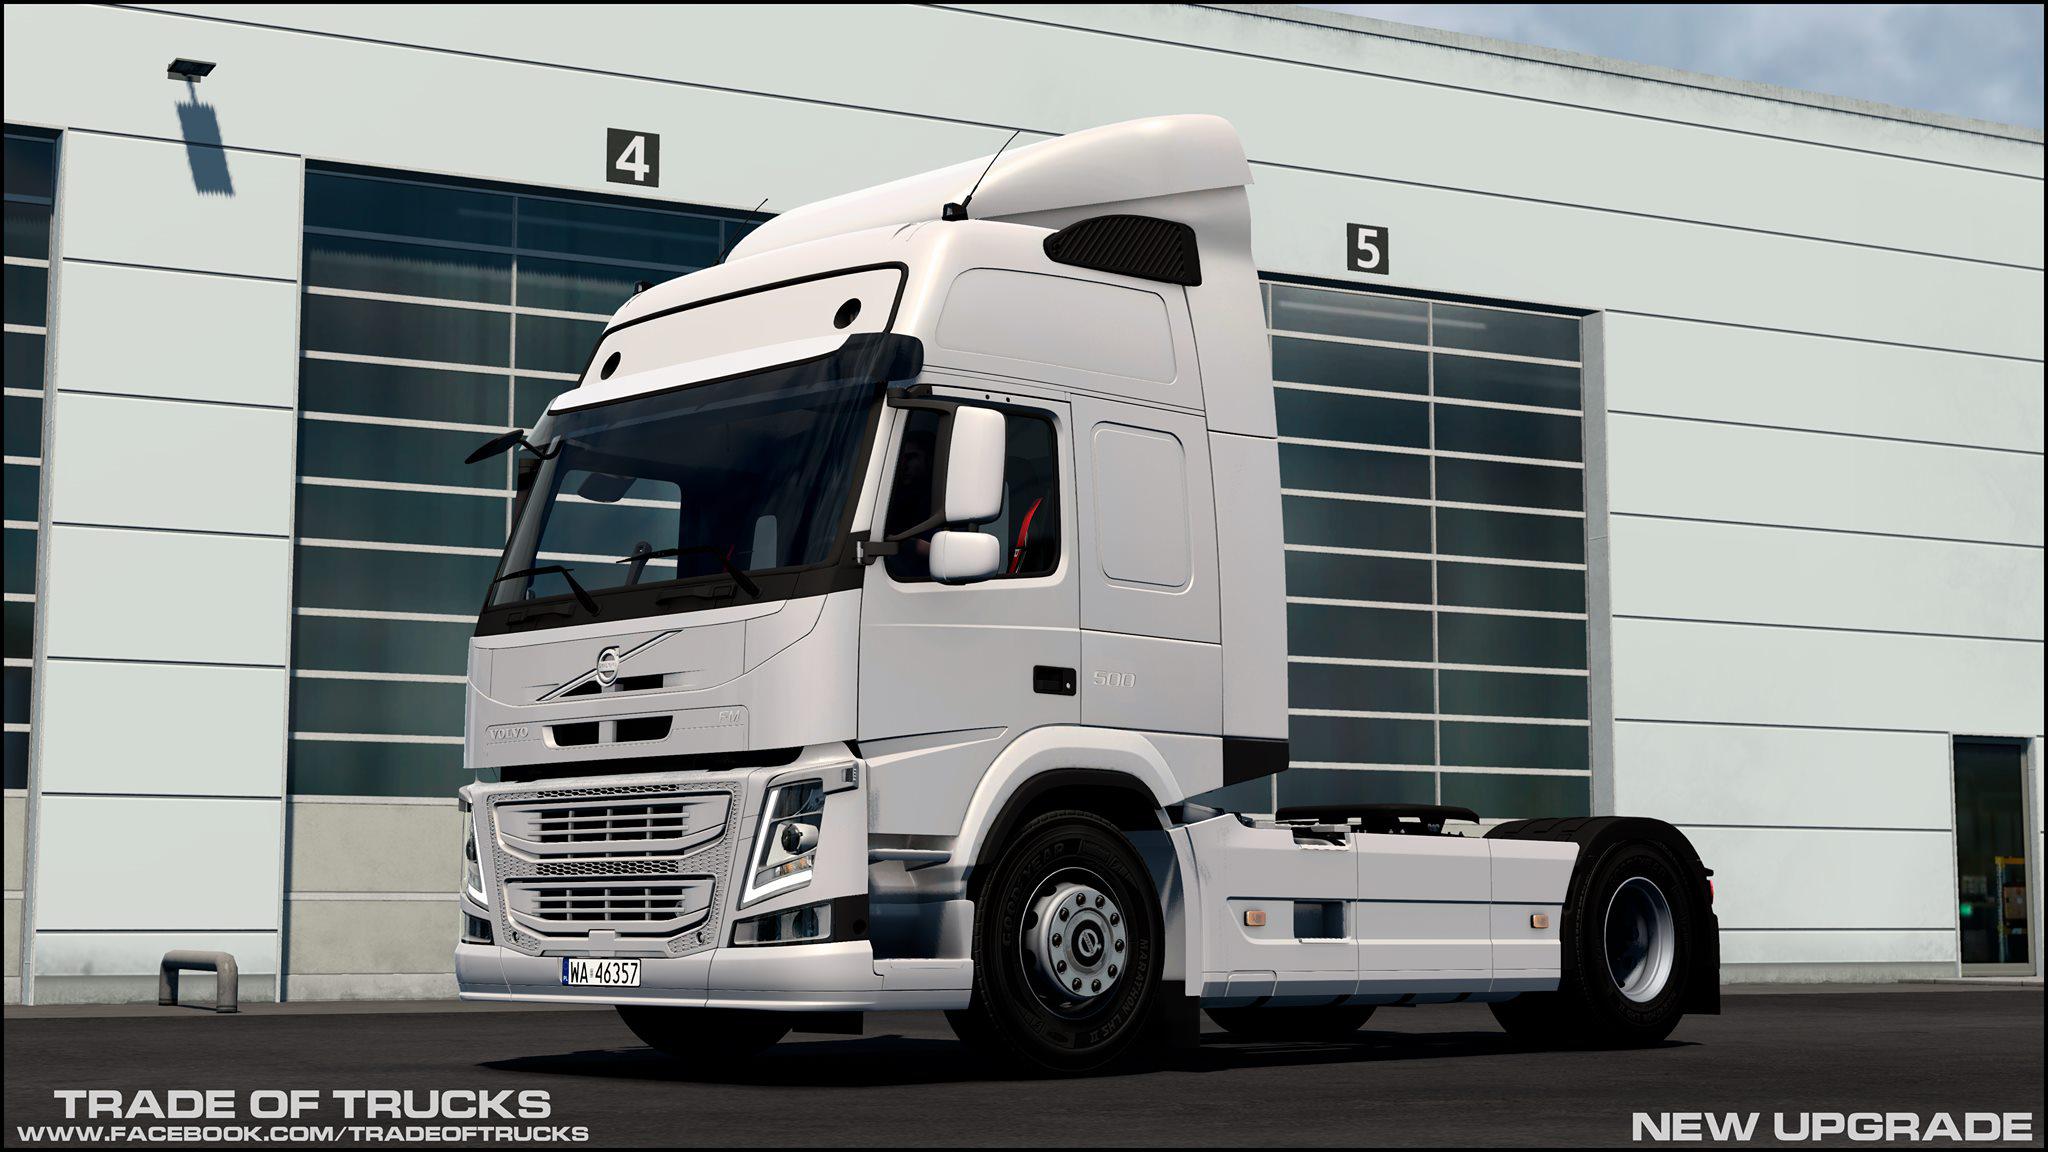 Euro Truck Simulator 2 GAME DEMO 1.40.4.8 - download